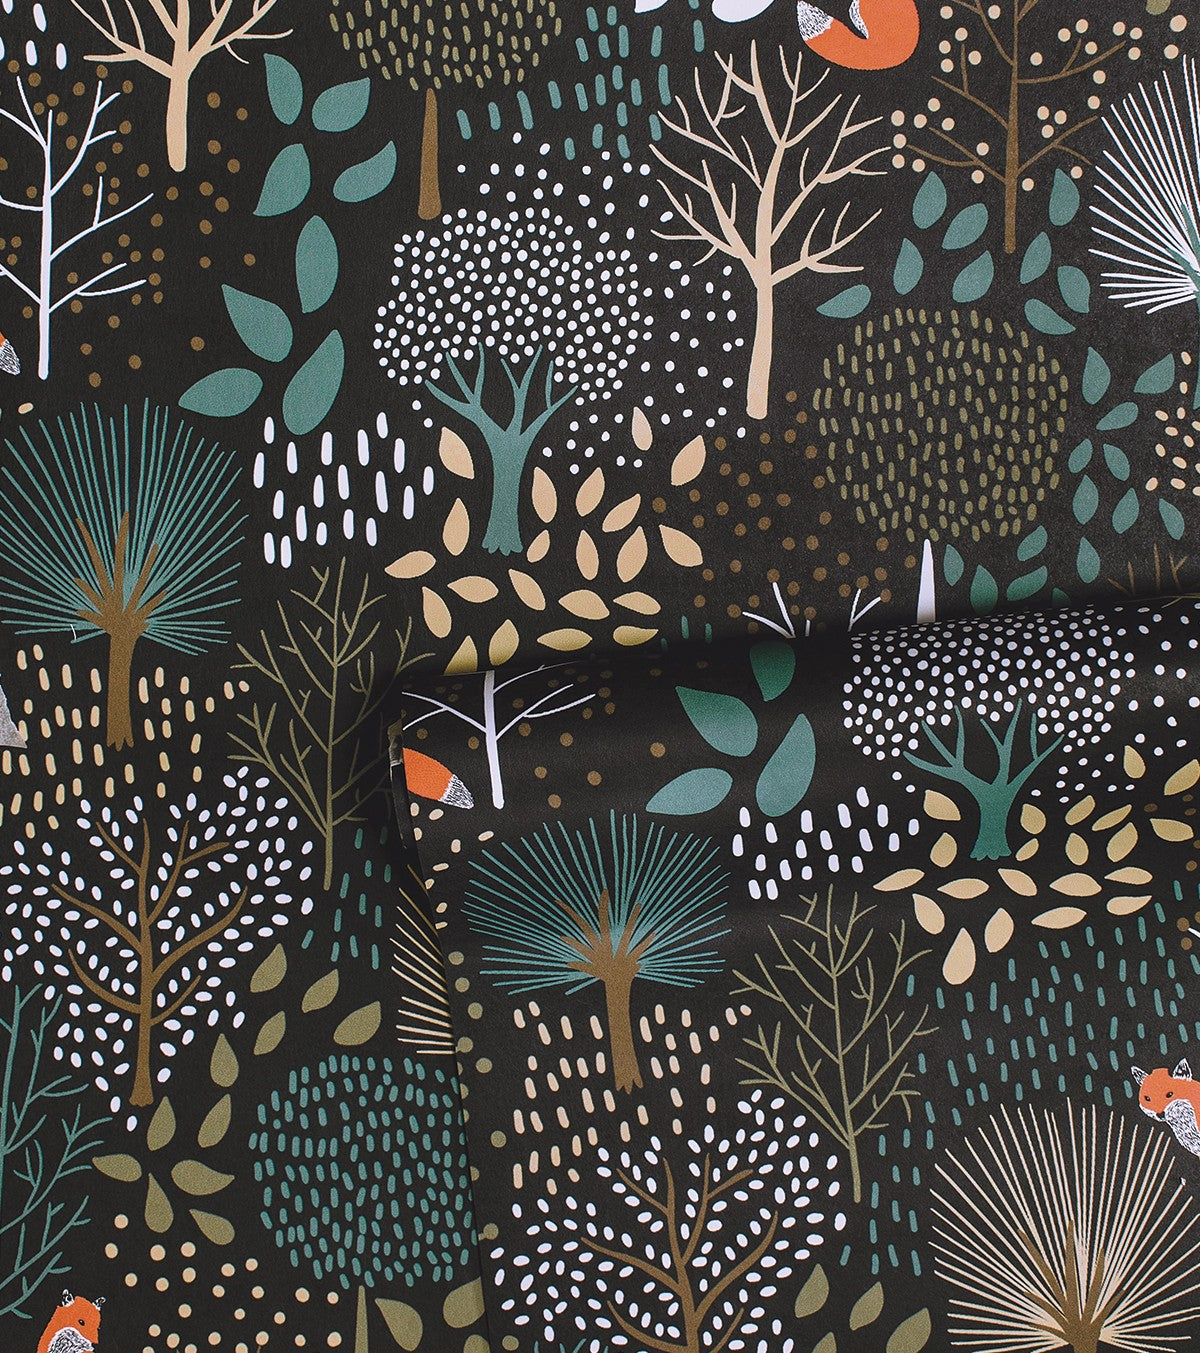 M. FOX - Children's wallpaper - Forest and fox motifs